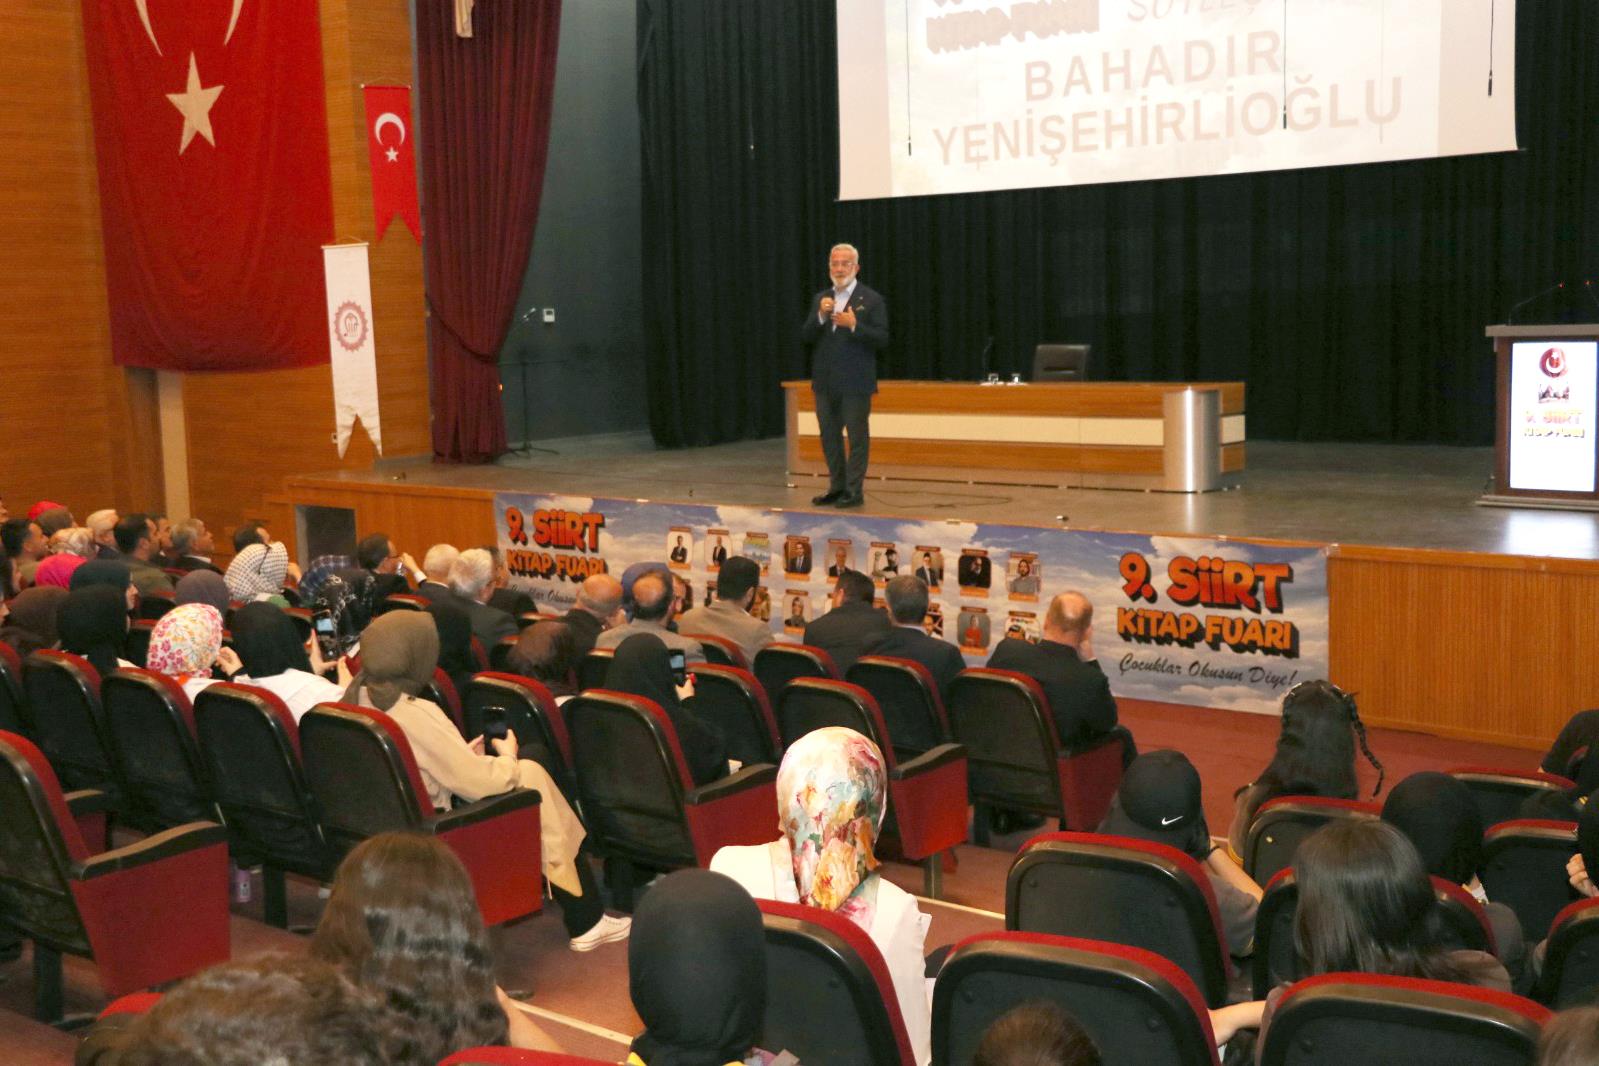 Rektörümüz Prof. Dr. Nihat Şındak, Bahadır Yenişehirlioğlu’nun Söyleşisine Katıldı